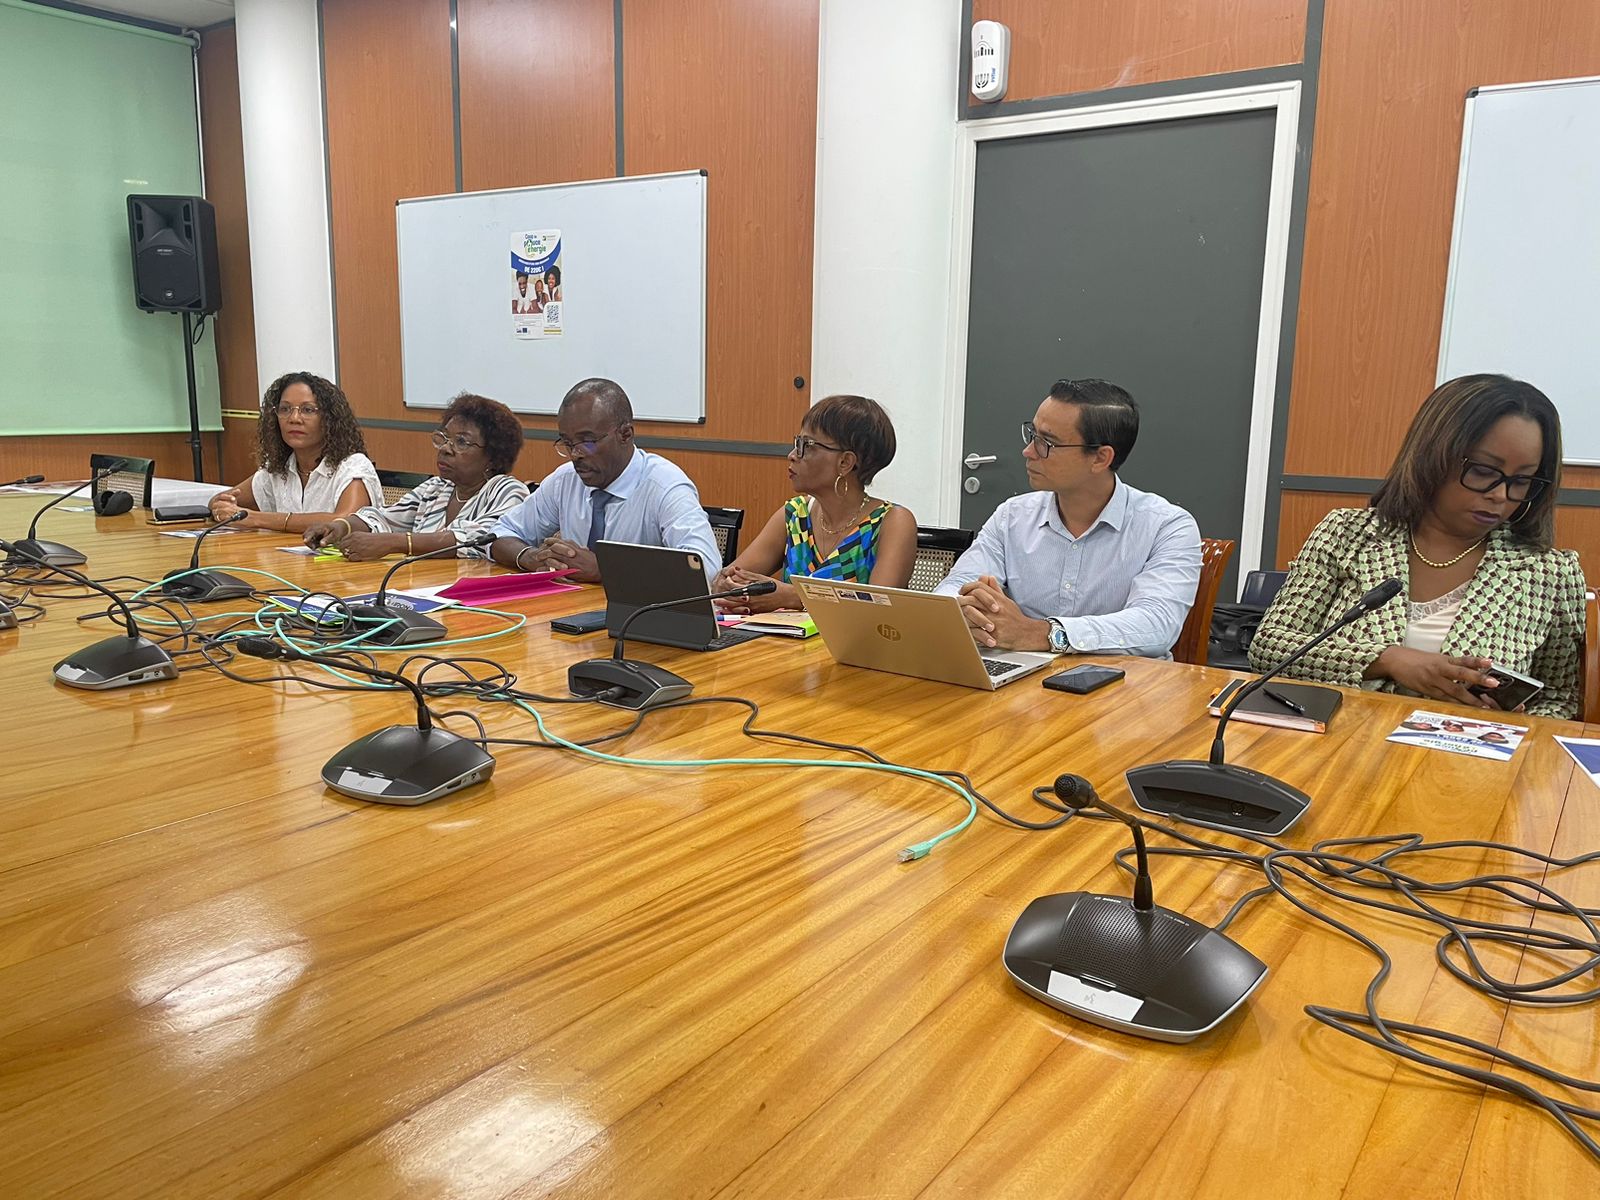     220 € pour soulager la facture des foyers précaires en Guadeloupe

